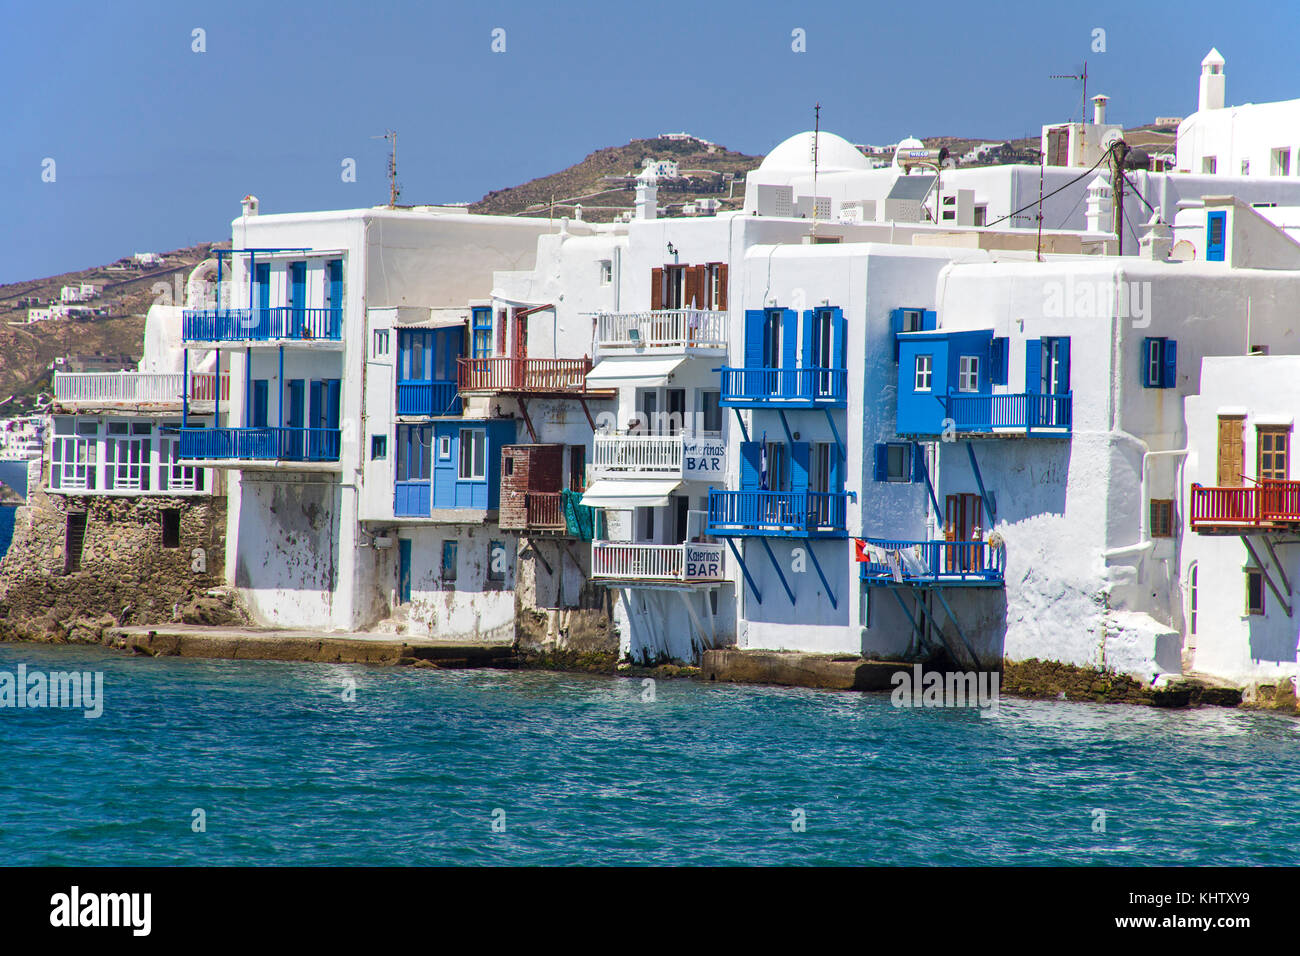 Klein Venedig in Mykonos-Stadt, Little Venice at Mykonos-town, Mykonos island, Cyclades, Aegean, Greece, Stock Photo